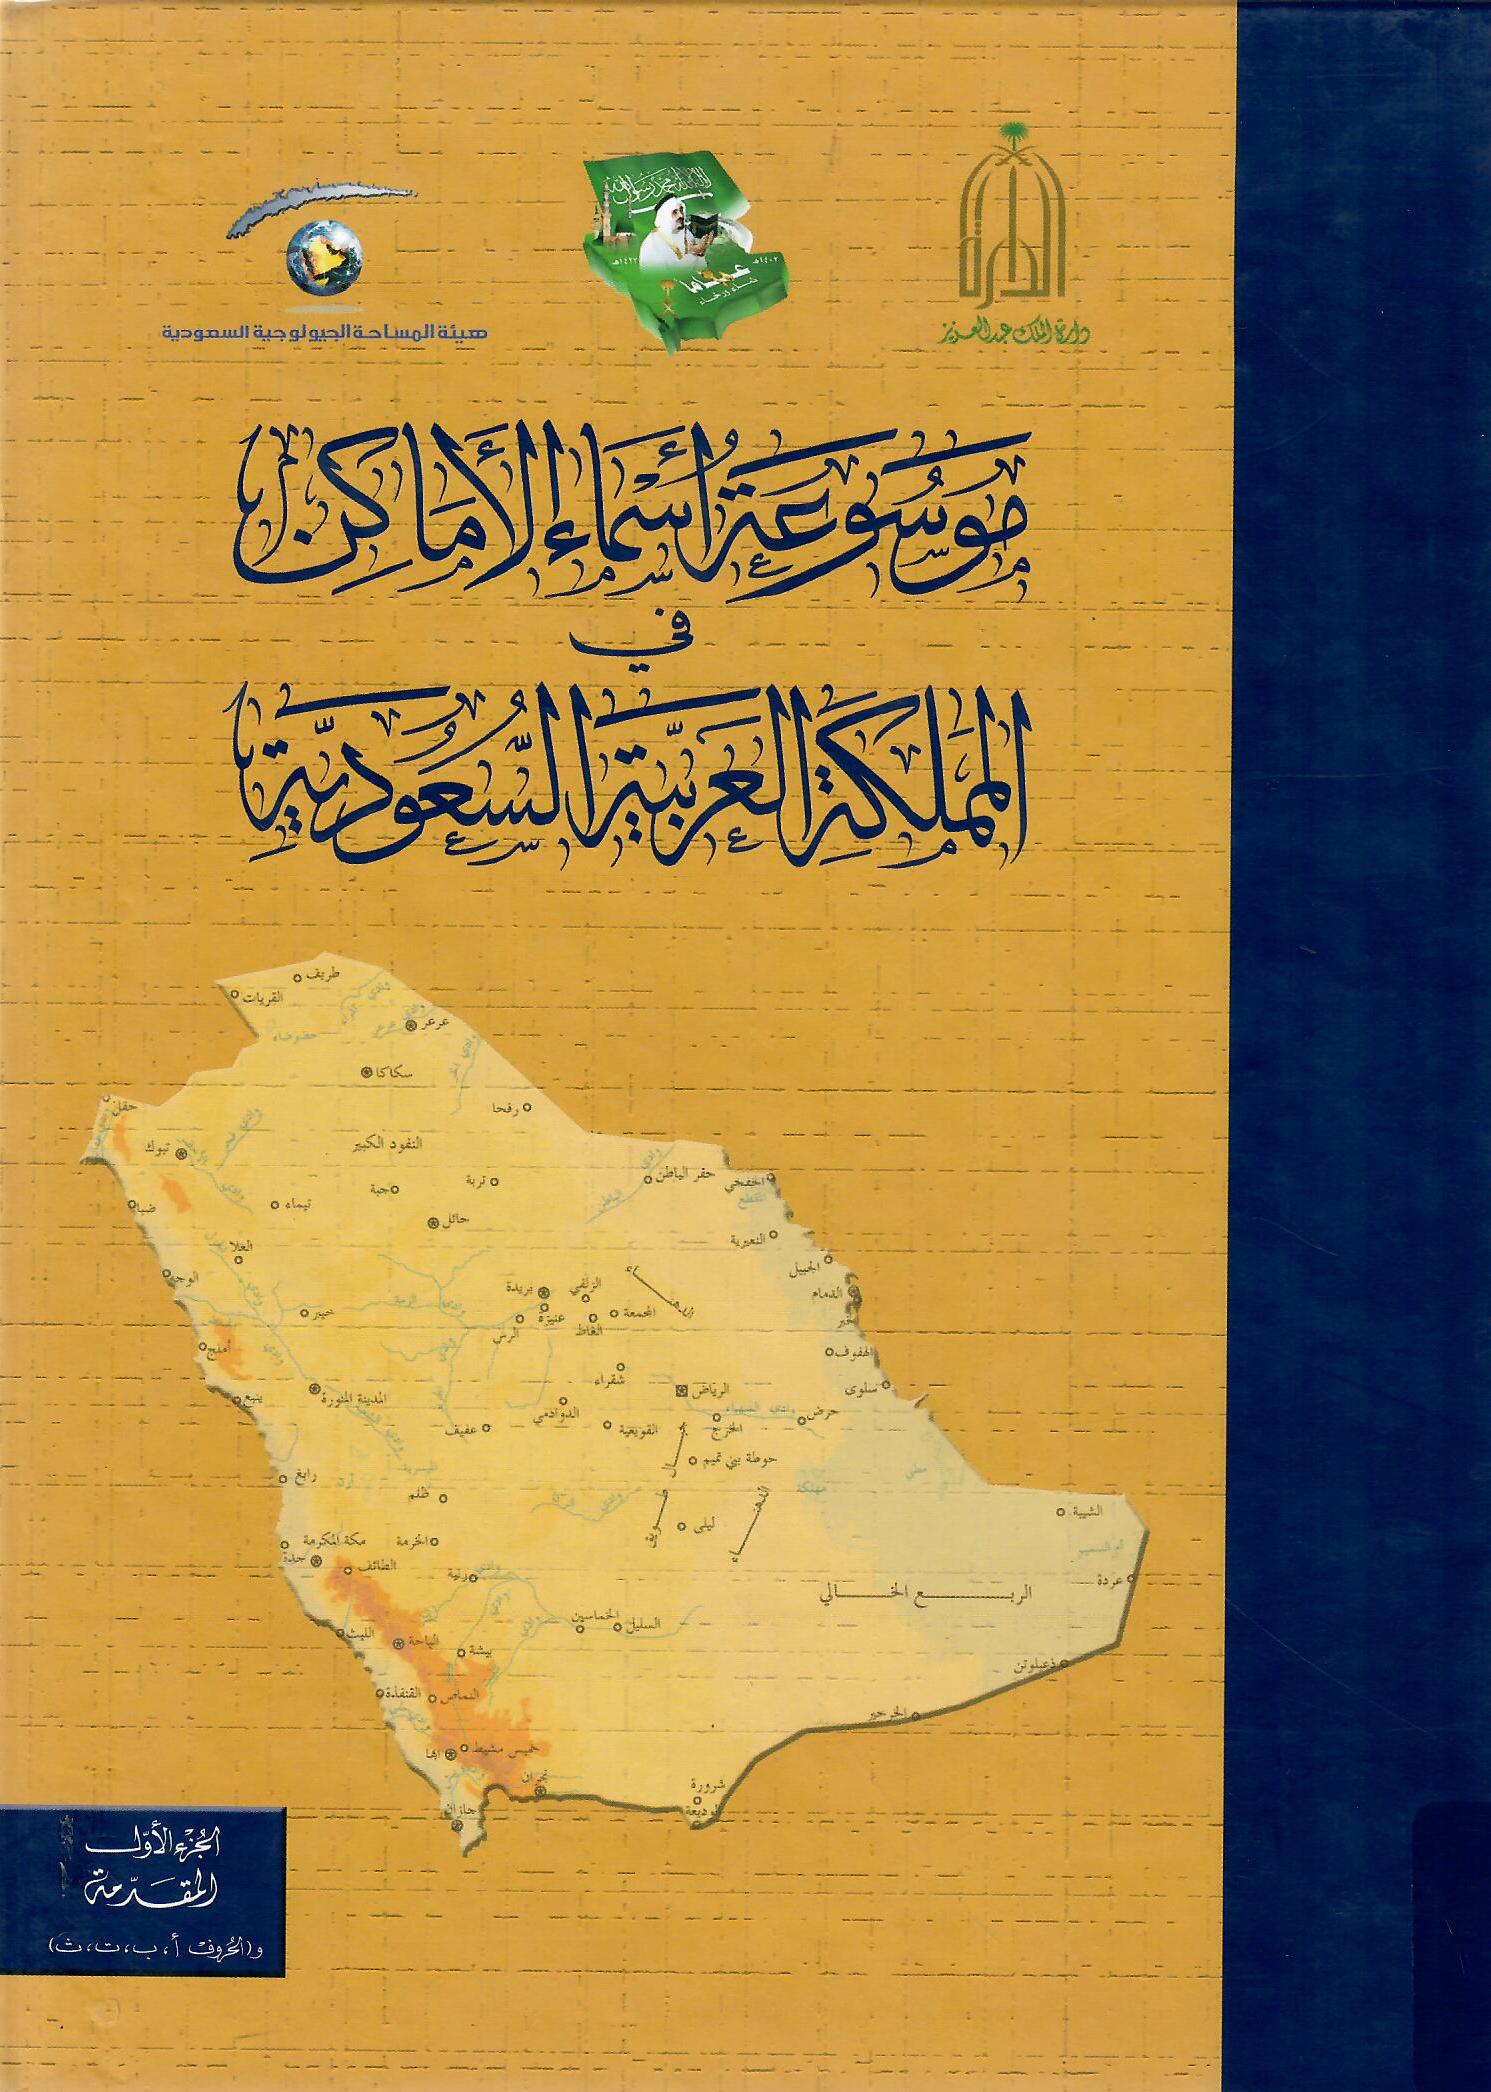 موسوعة أسماء الأماكن في المملكة العربية السعودية الجزء الأول